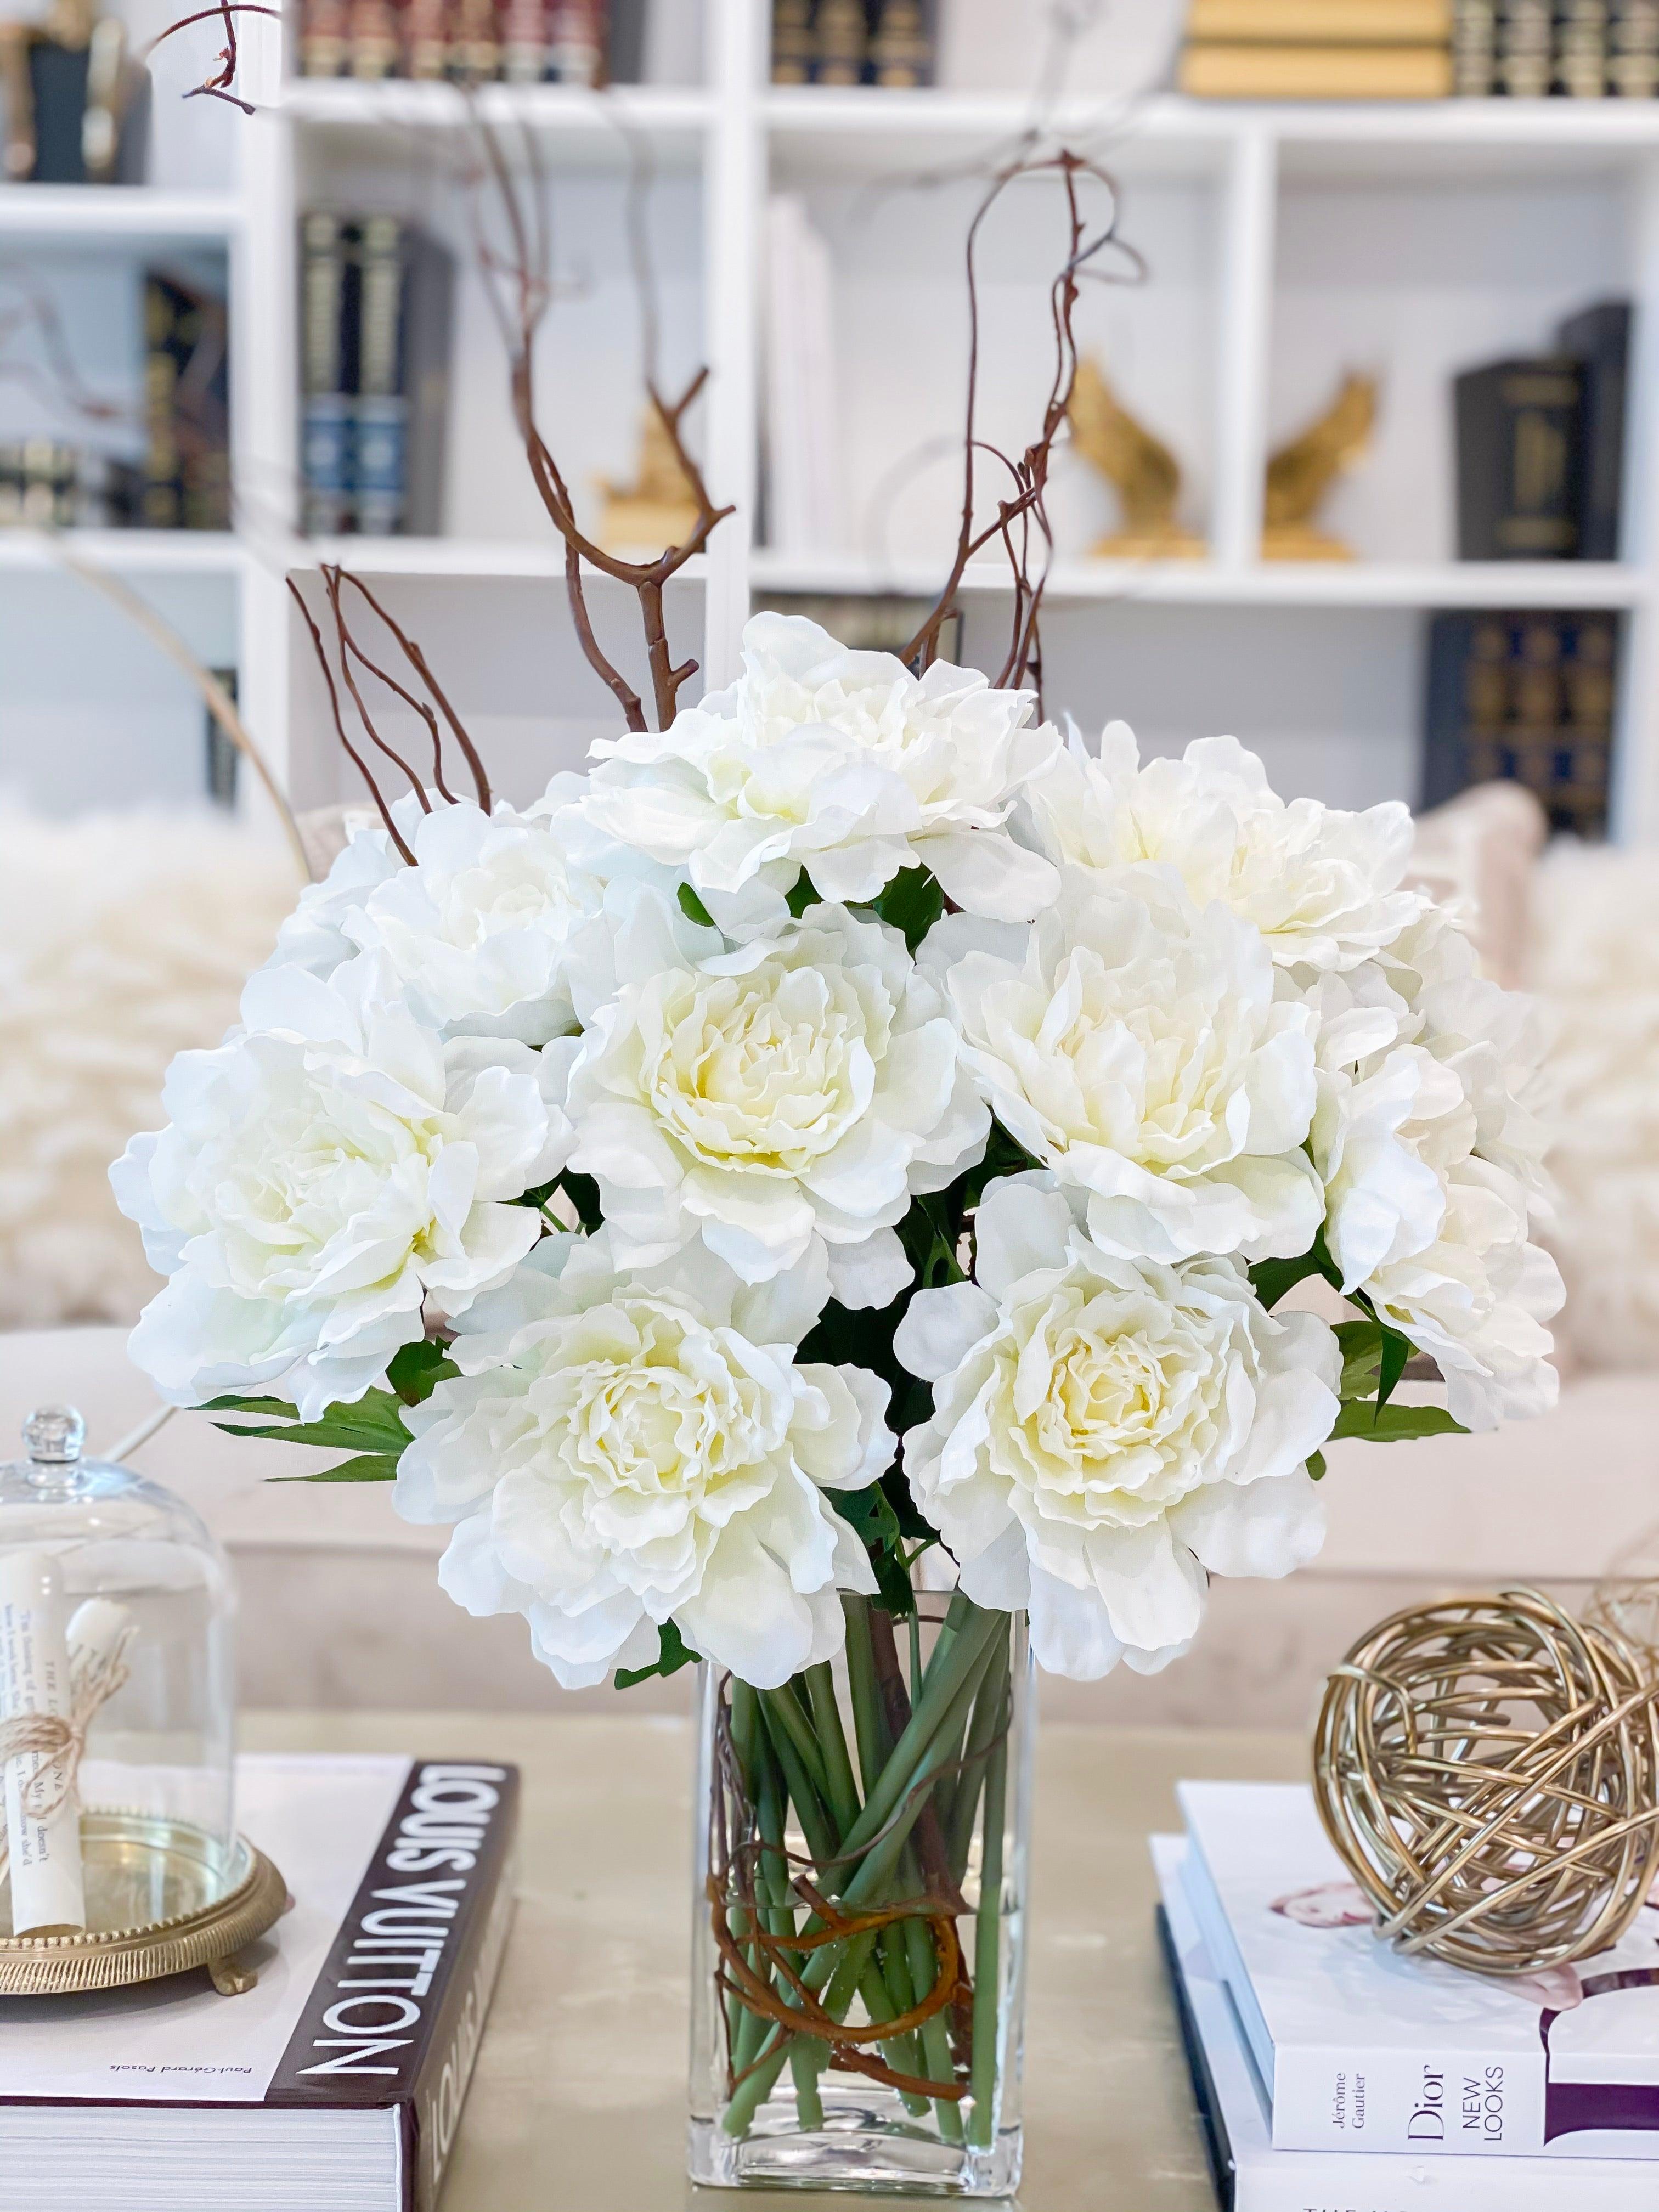 White Real-touch Peonies Arrangement Artificial Faux Table Centerpiece,  Wedding Faux Florals Flowers Arrangement in Glass Vase by Blue Paris